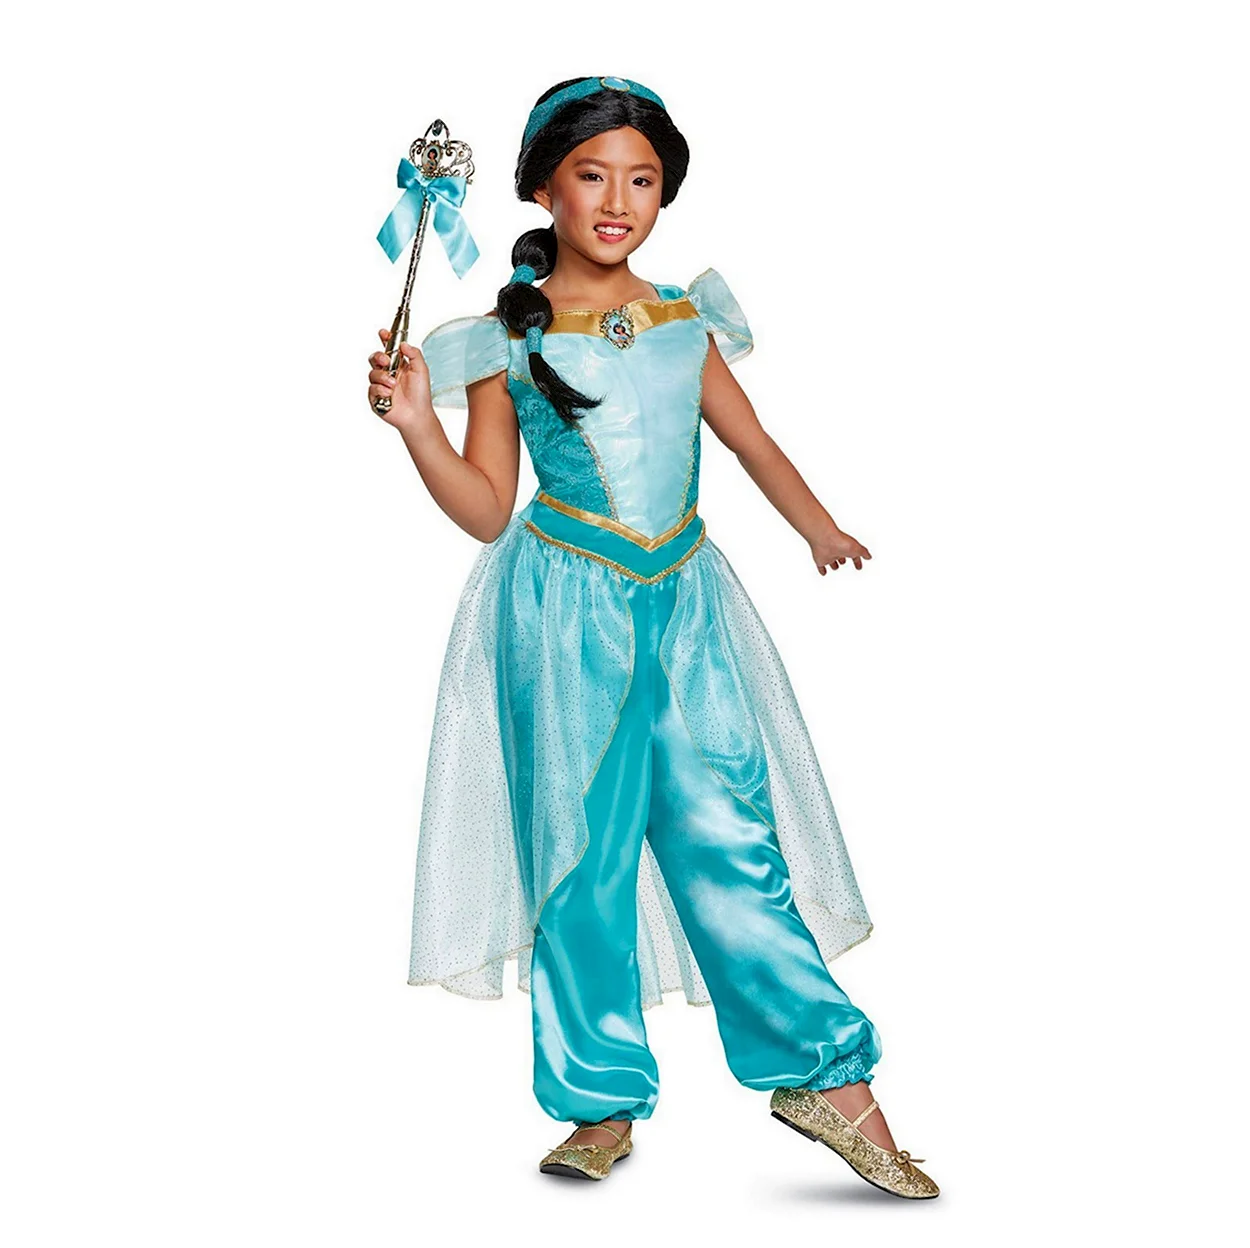 Как сшить новогодний костюм восточной принцессы, Жасмин? | Детский стиль, Костюм, Модные стили